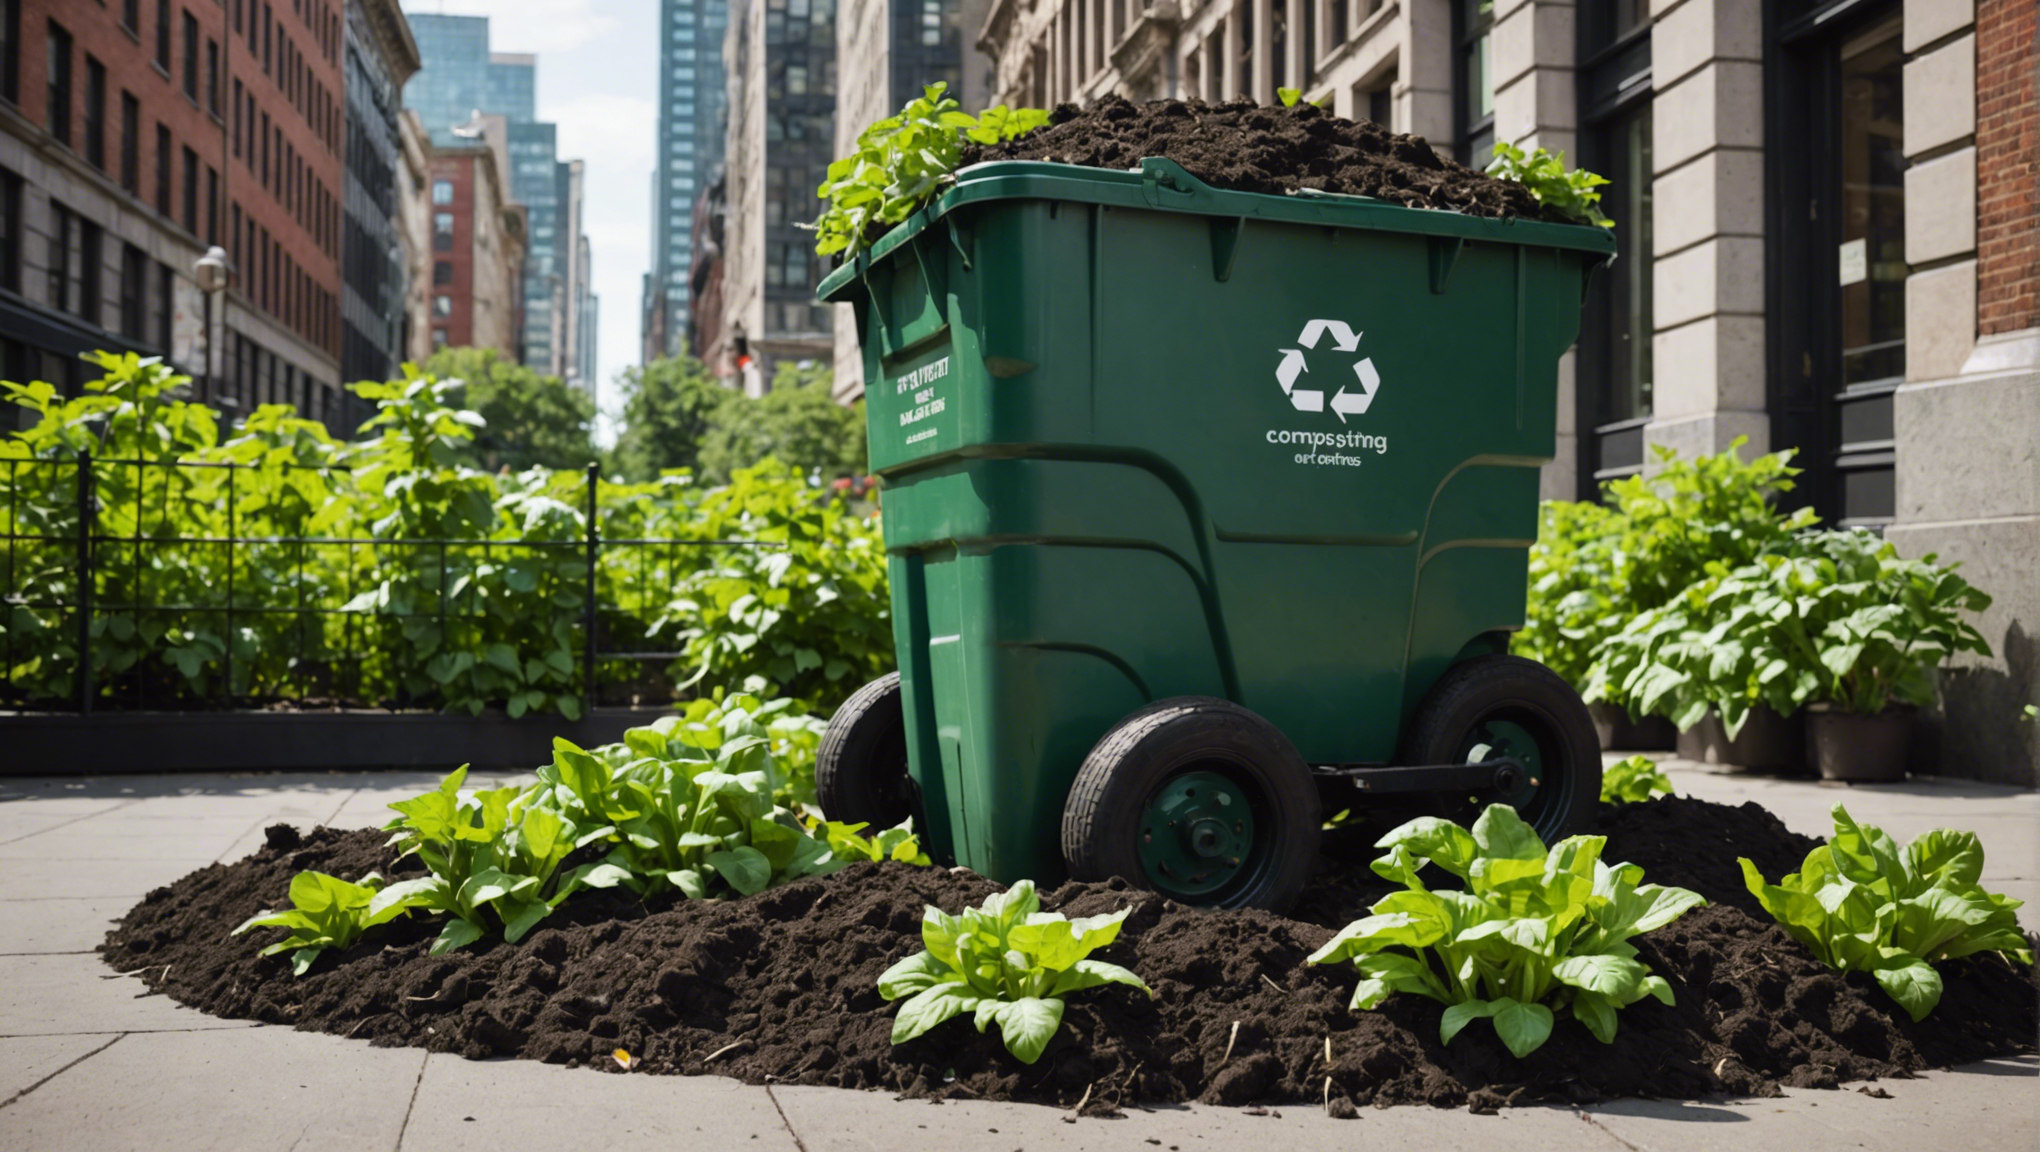 découvrez nos conseils pratiques pour réussir votre compostage en ville et contribuer à un mode de vie durable et respectueux de l'environnement.